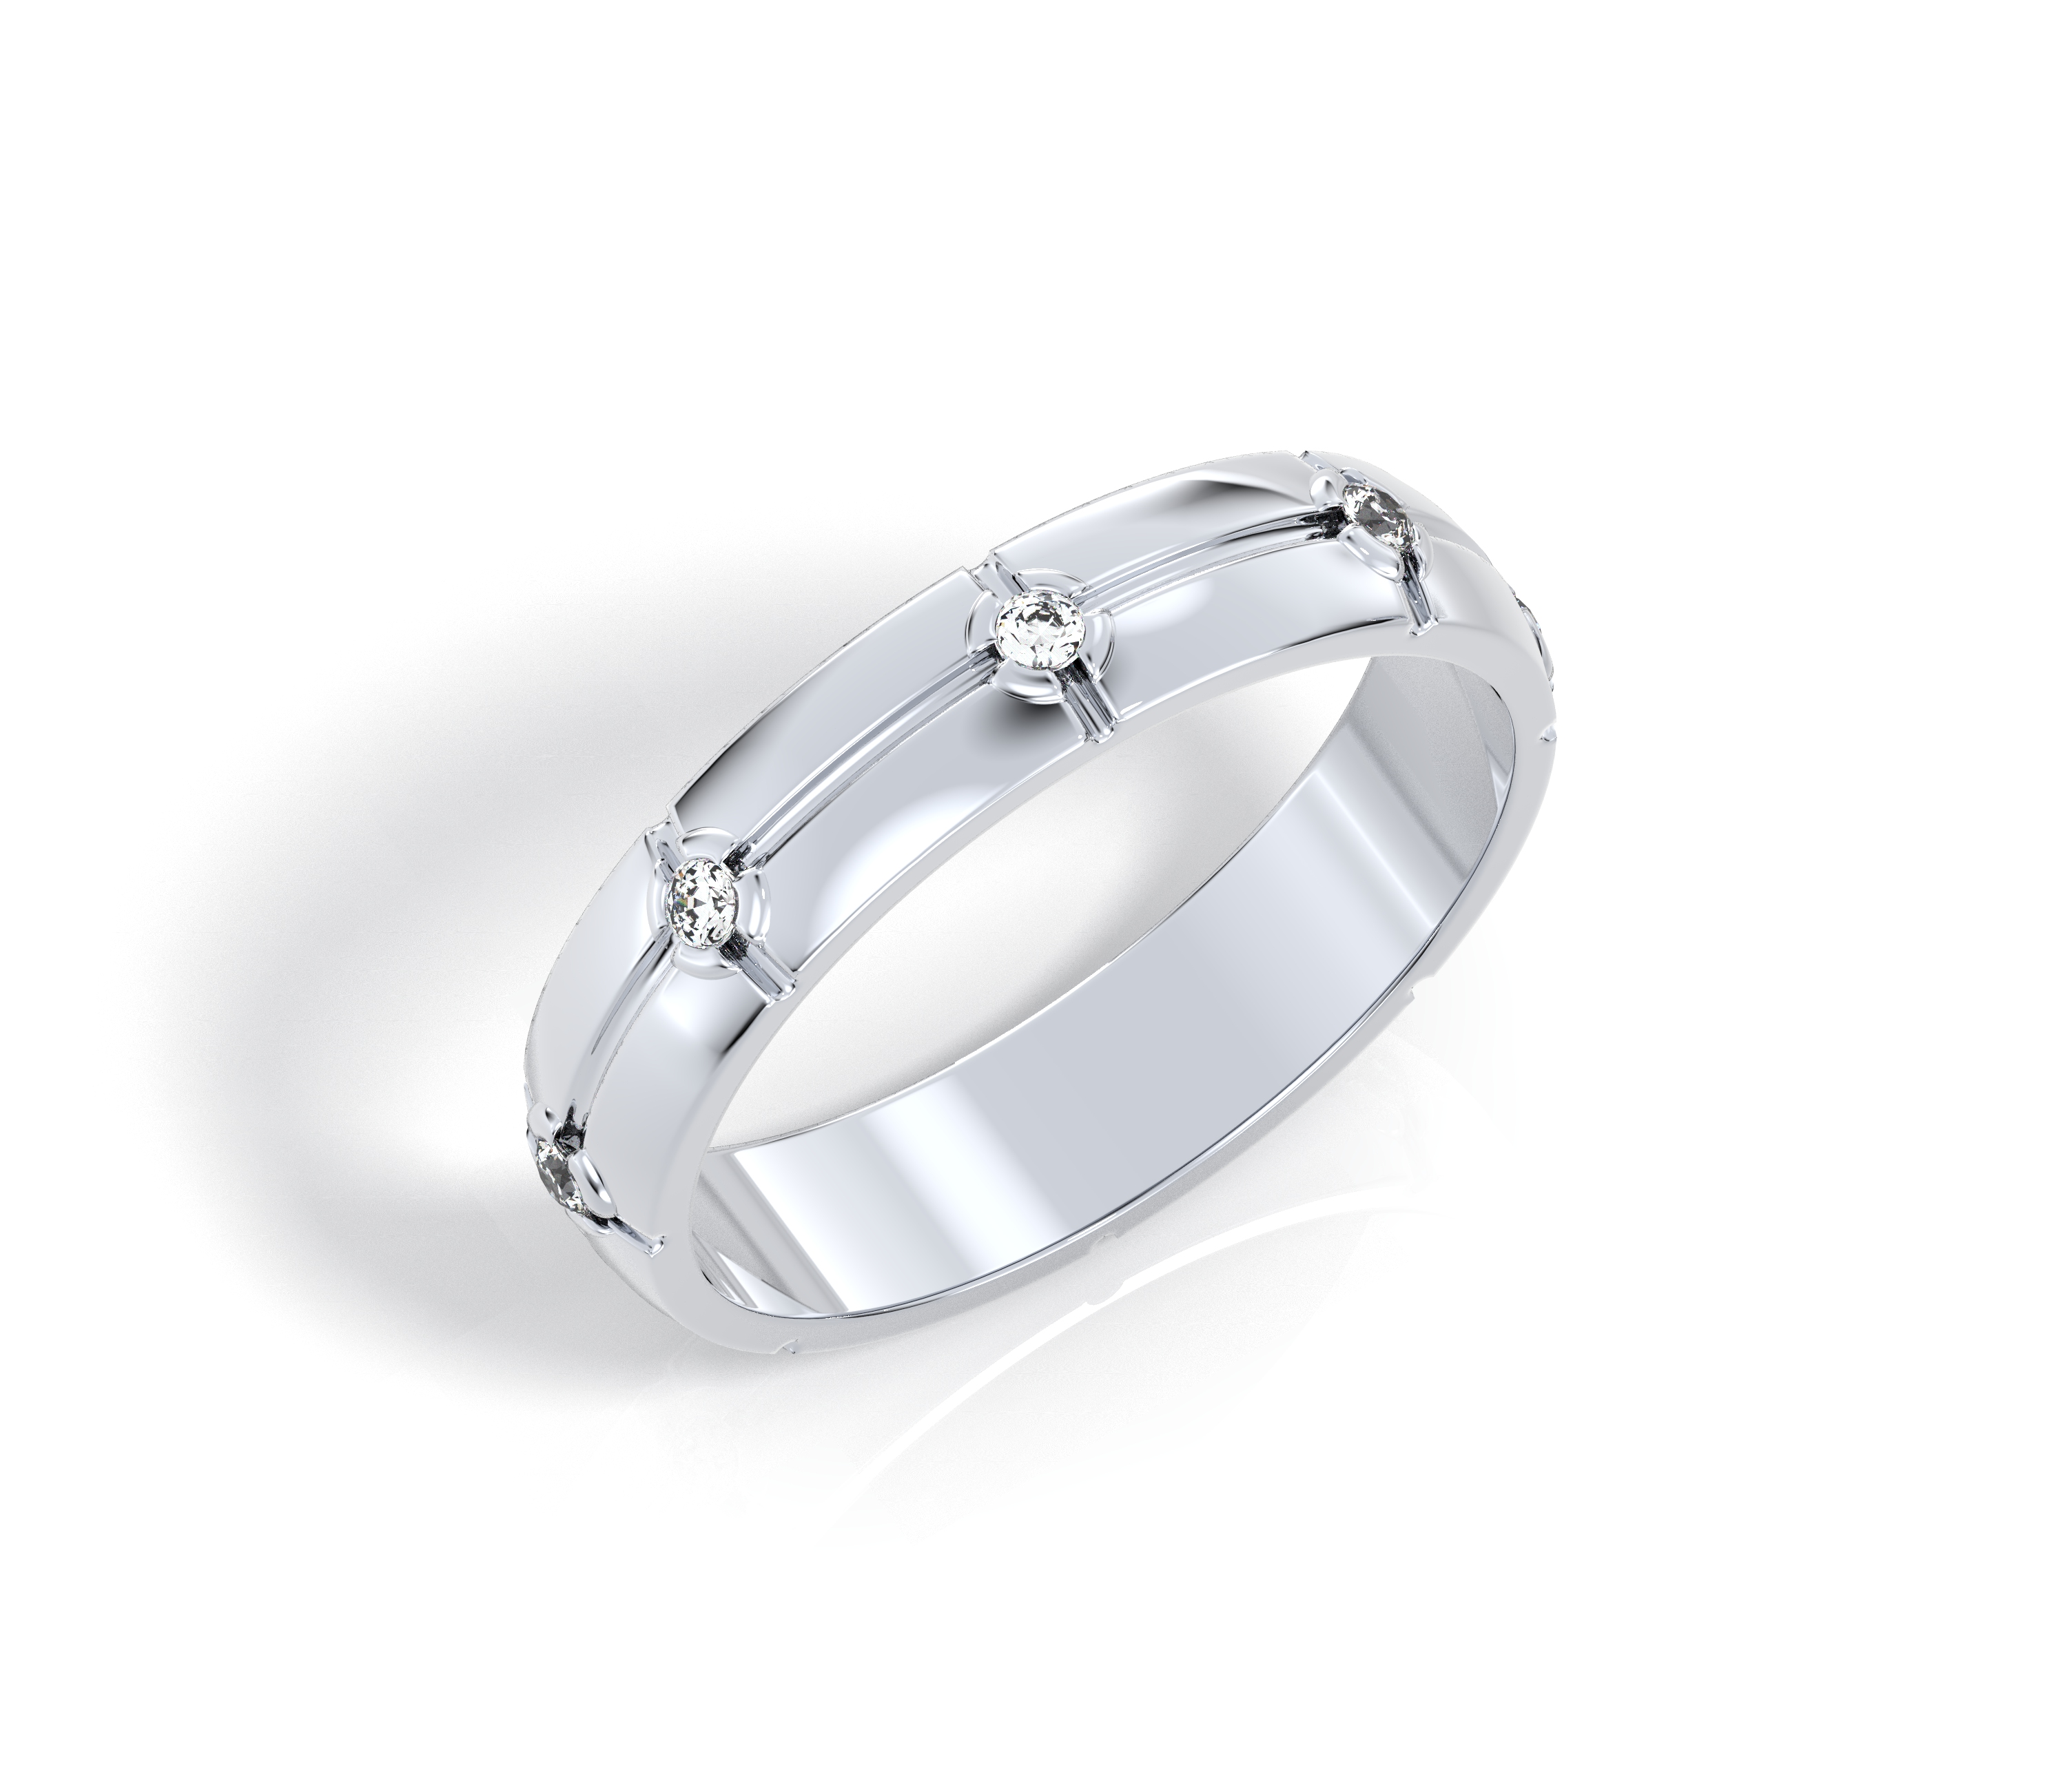 100324 кольцо мужское